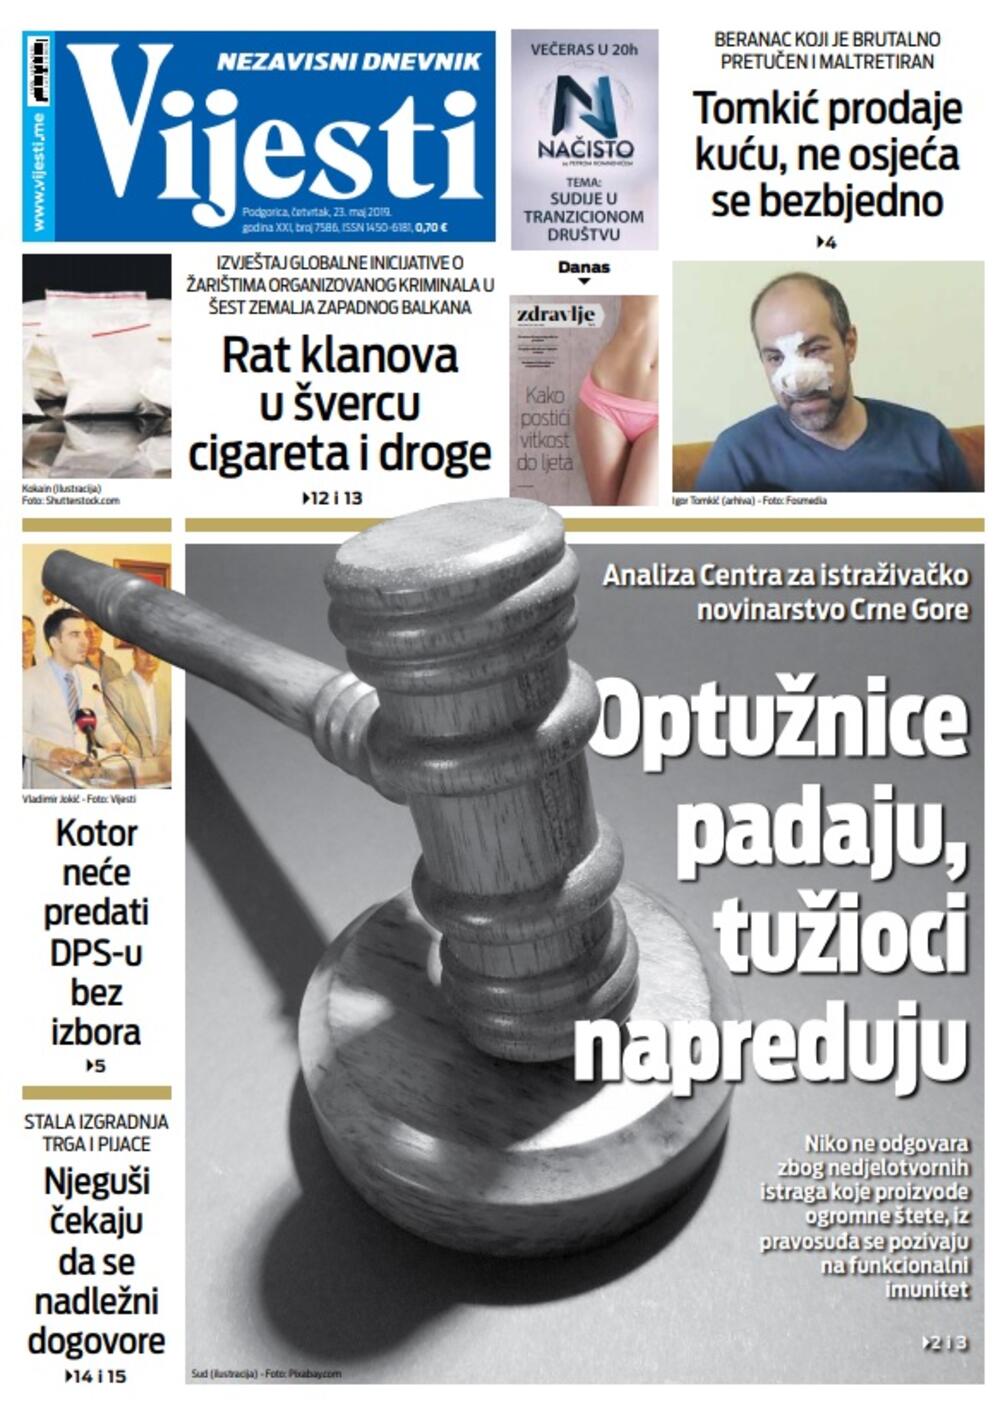 Naslovna strana "Vijesti" 23.5., Foto: Vijesti